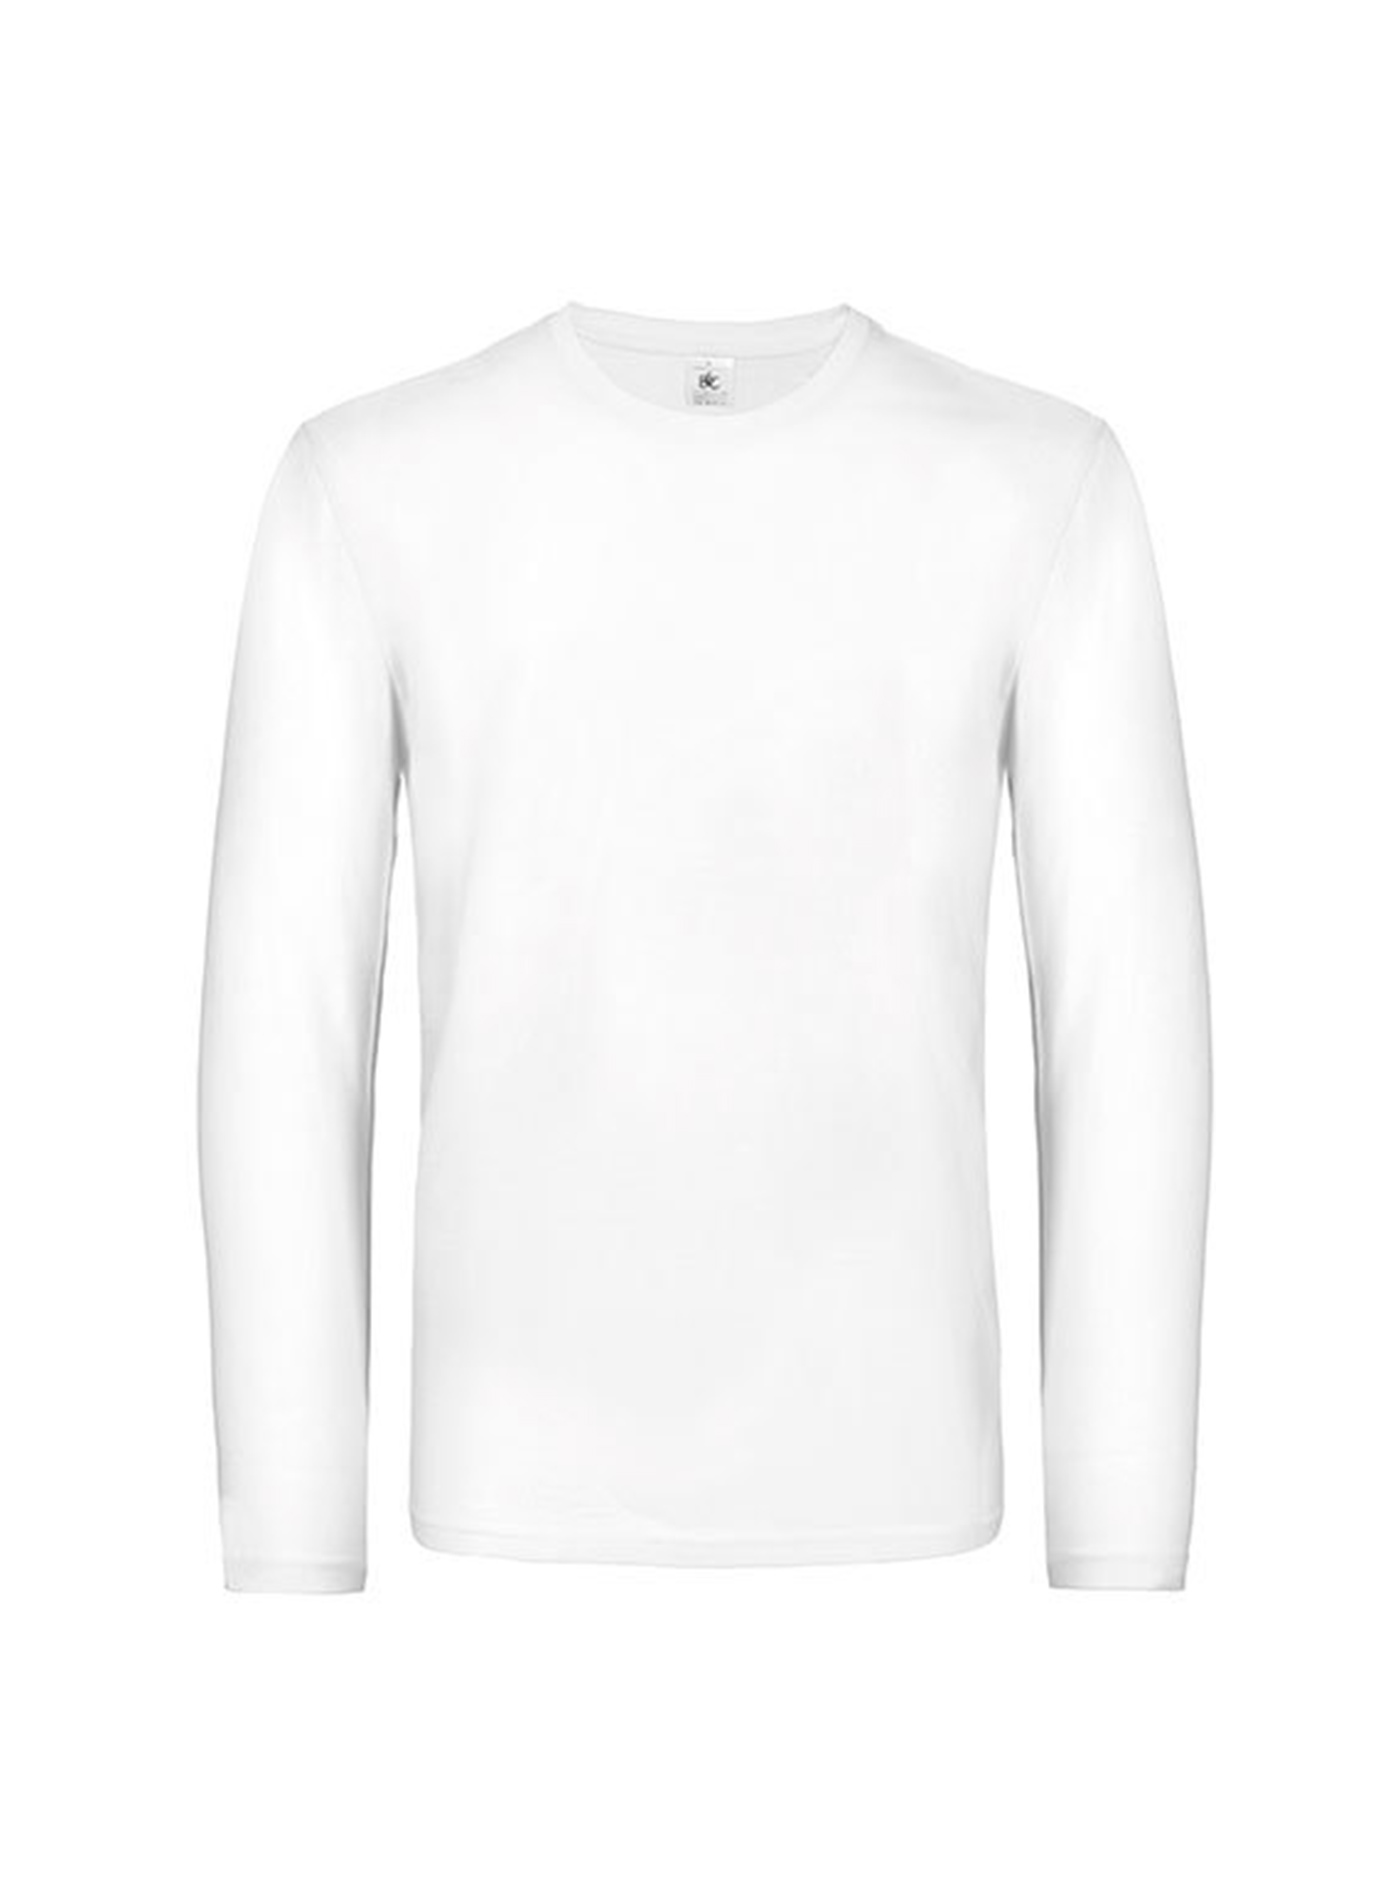 Pánské tričko s dlouhým rukávem B&C Collection - Bílá 4XL